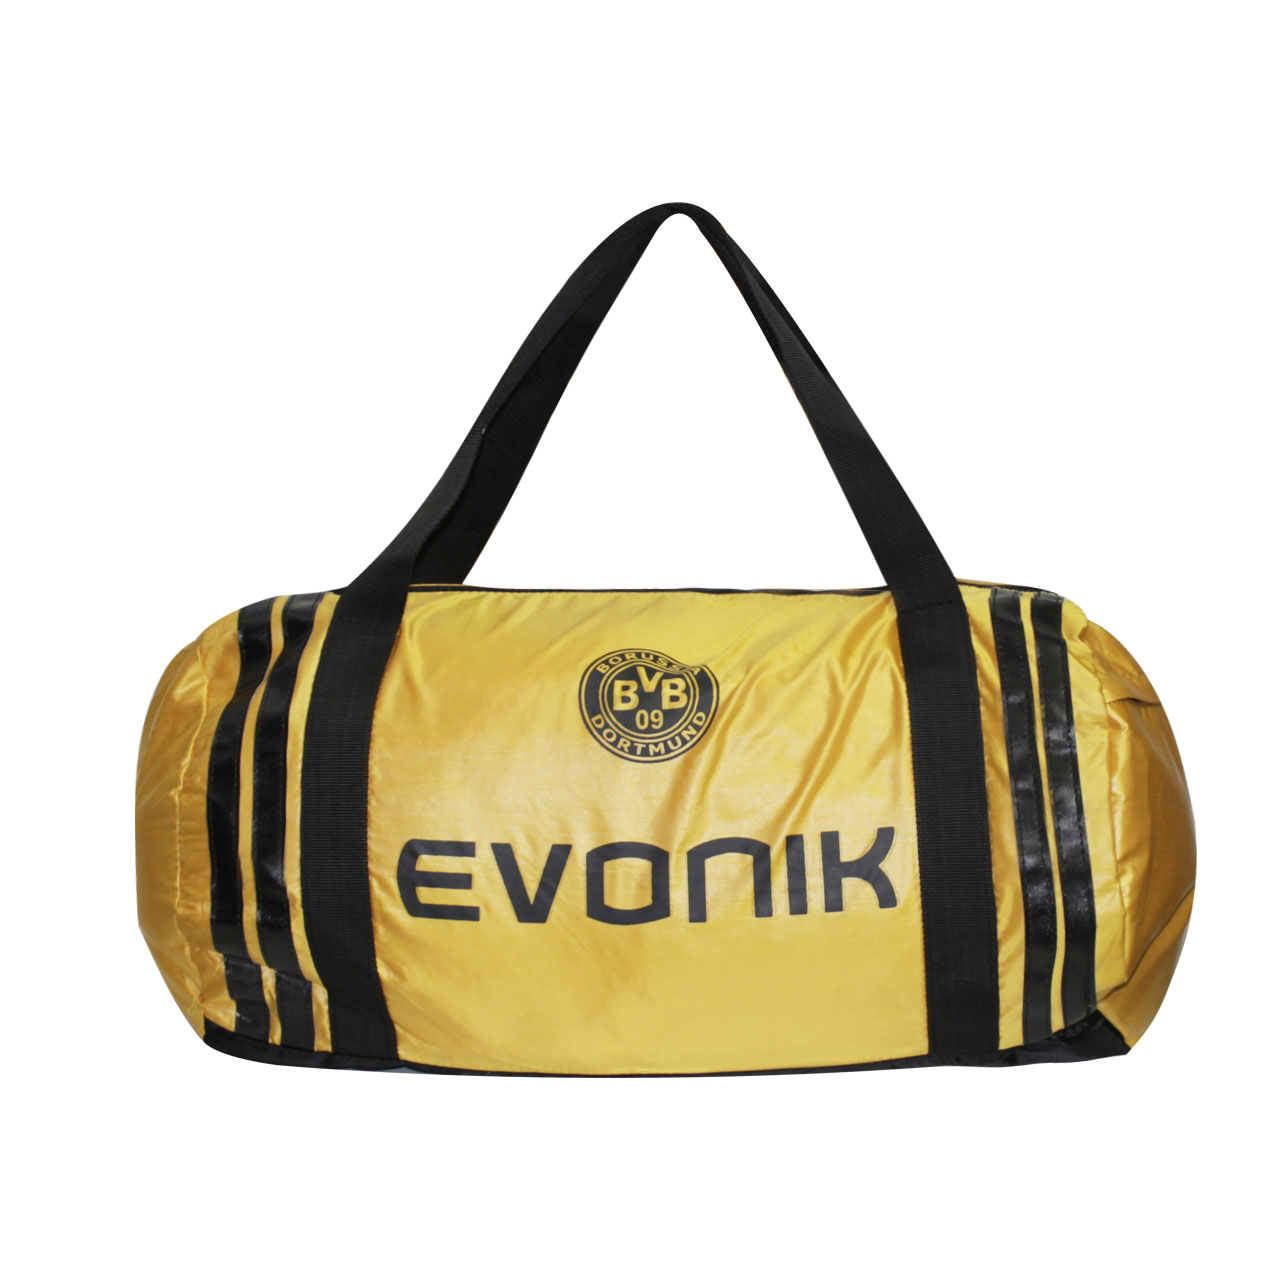 ساک ورزشی اوونیک مدل Borussia Dortmund